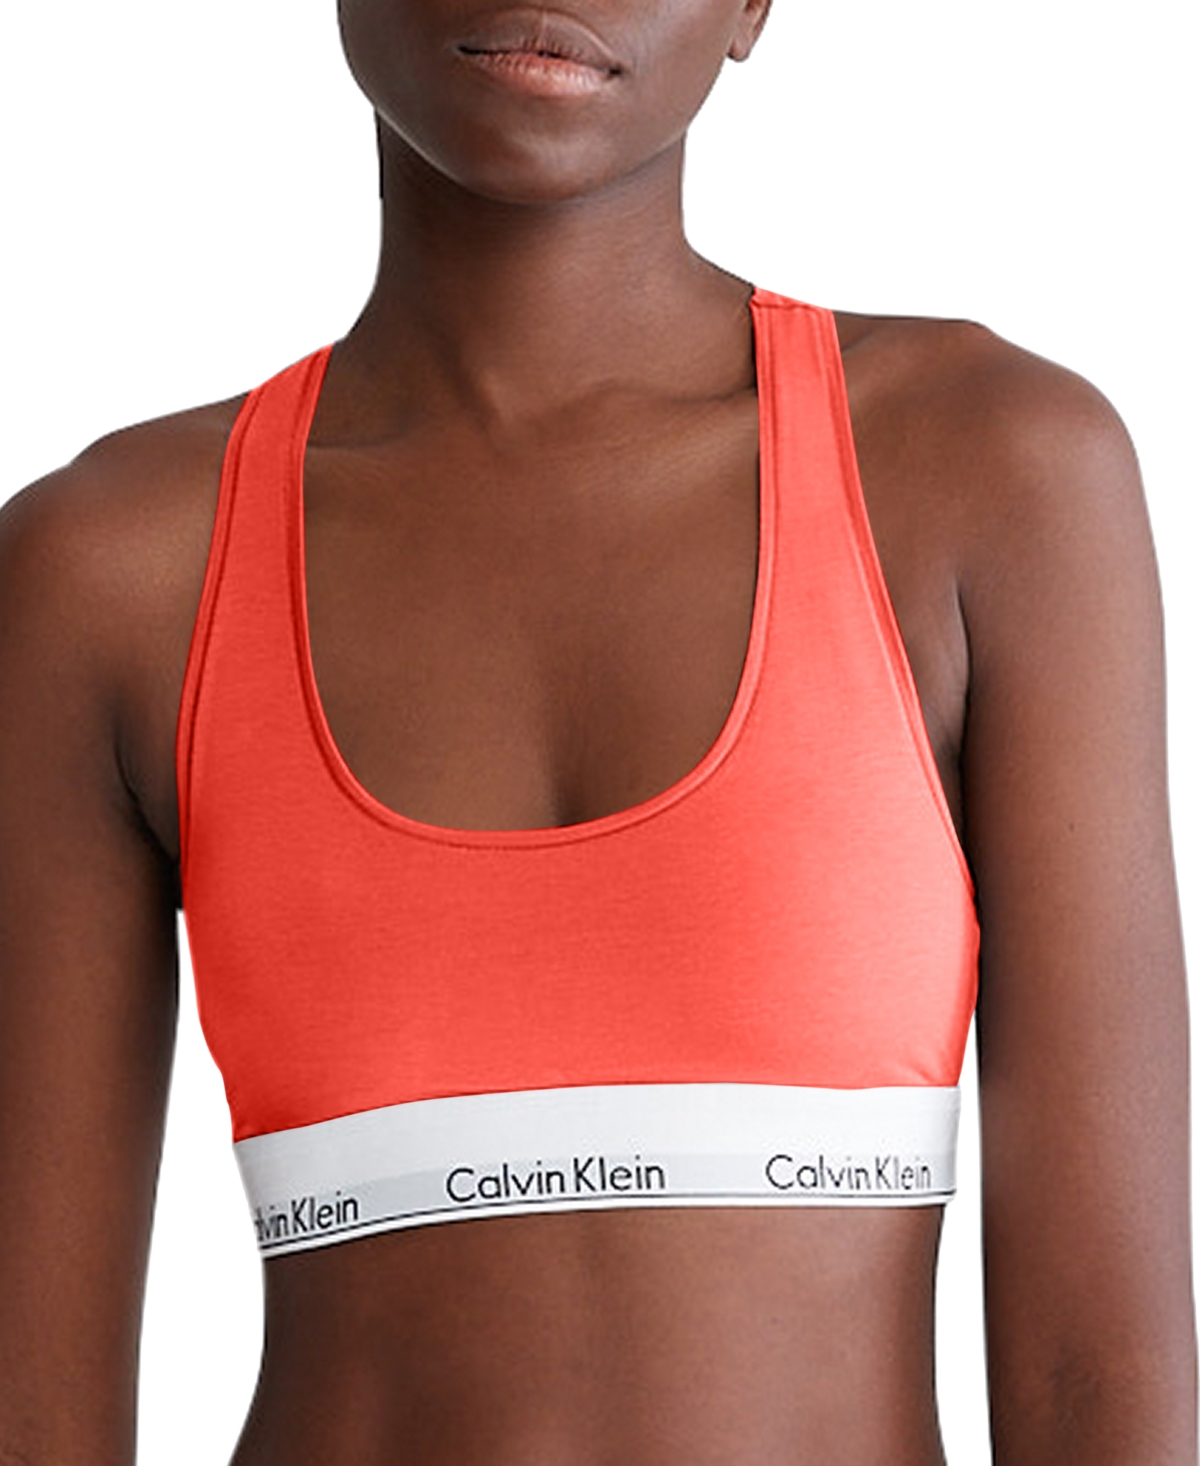 Shop Calvin Klein Modern Cotton Women's Modern Cotton Bralette F3785 In Calypso Coral